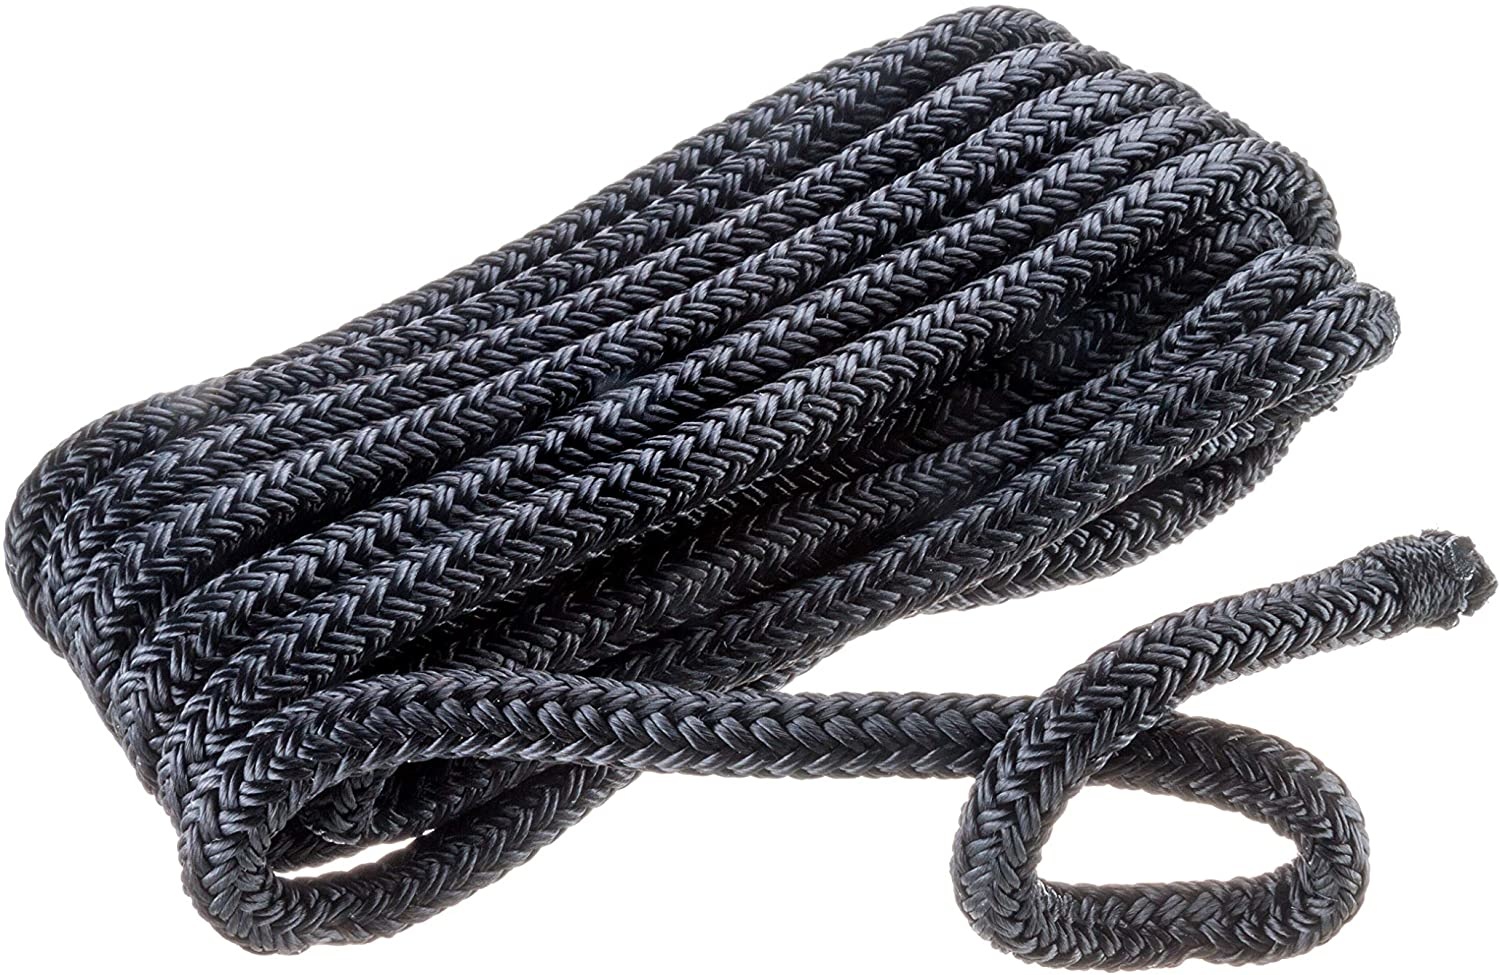 Seachoice- double braided nylon rope 3/8 black per foot 47090 - Golden  Anchor Marina